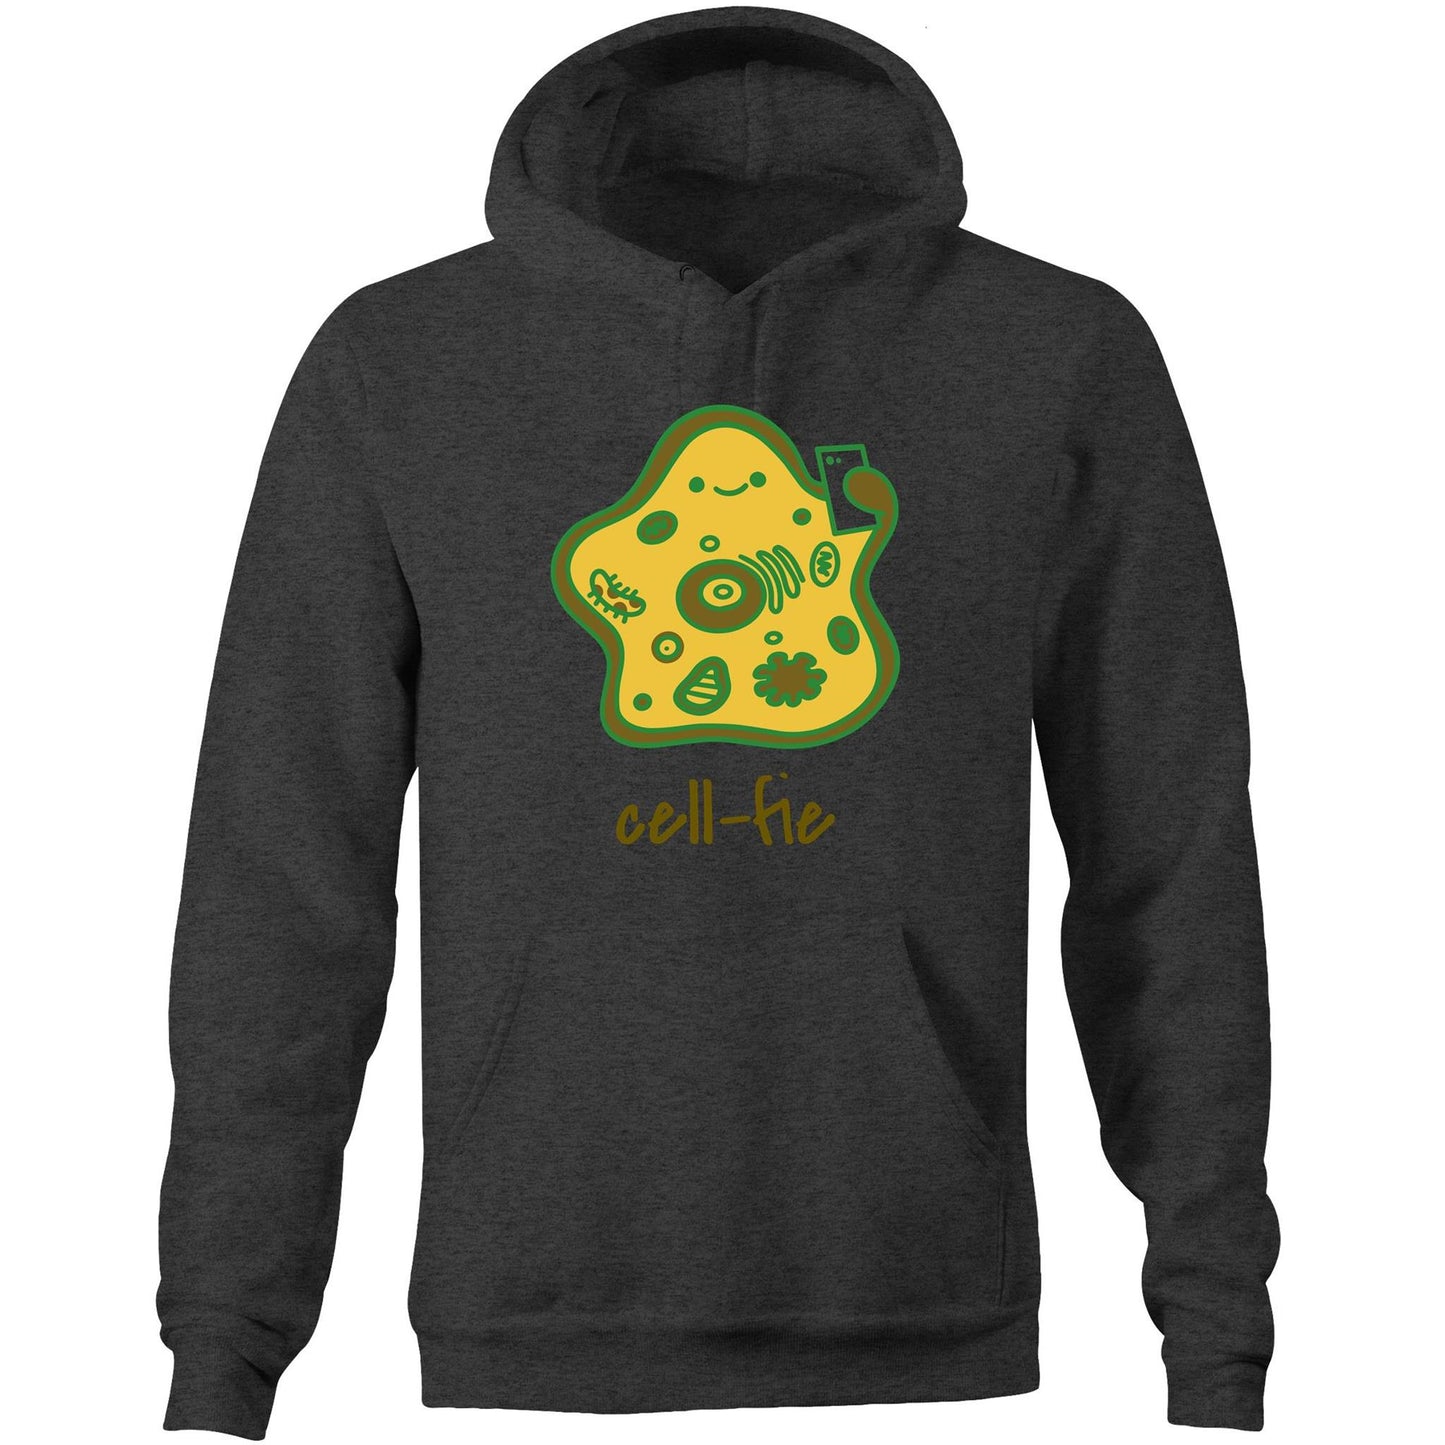 Cell-fie - Pocket Hoodie Sweatshirt Asphalt Marle Hoodie Science